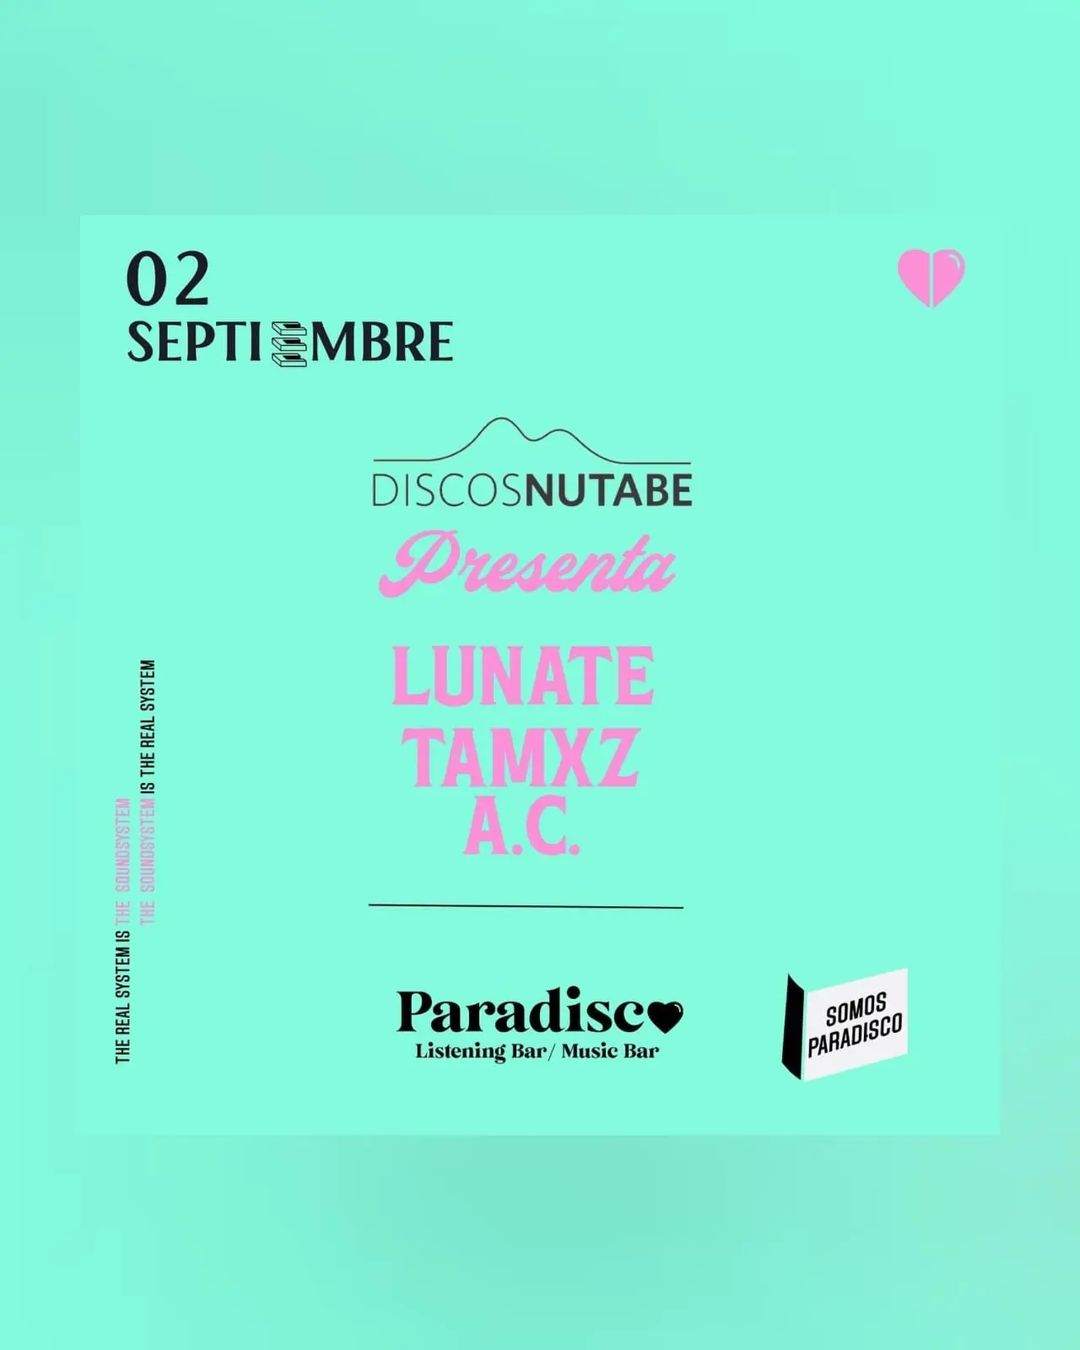 Discos Nutabe presenta: Lunate / Tamxz / A.C. - Página frontal